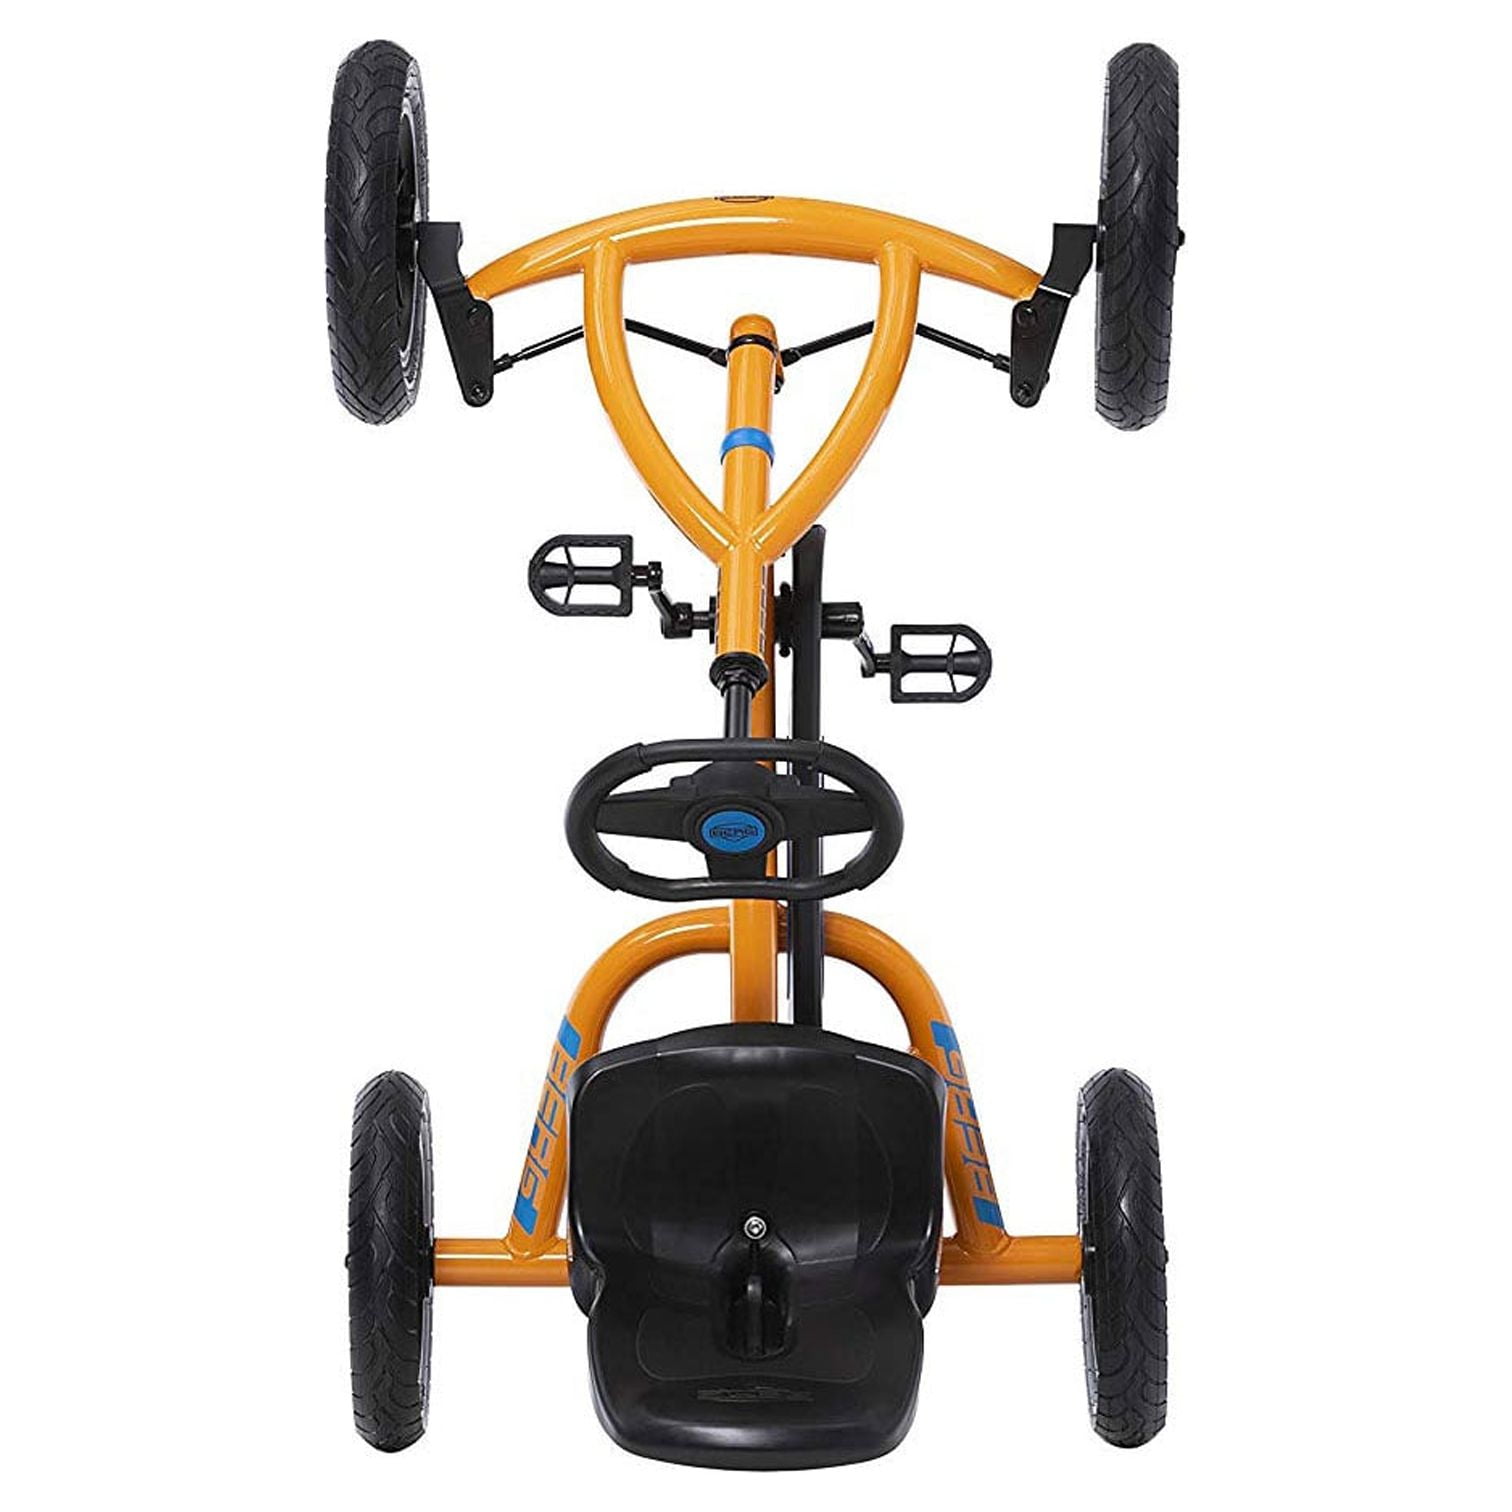 BERG Toys Orange Go Kart Ride-On Pedal Car